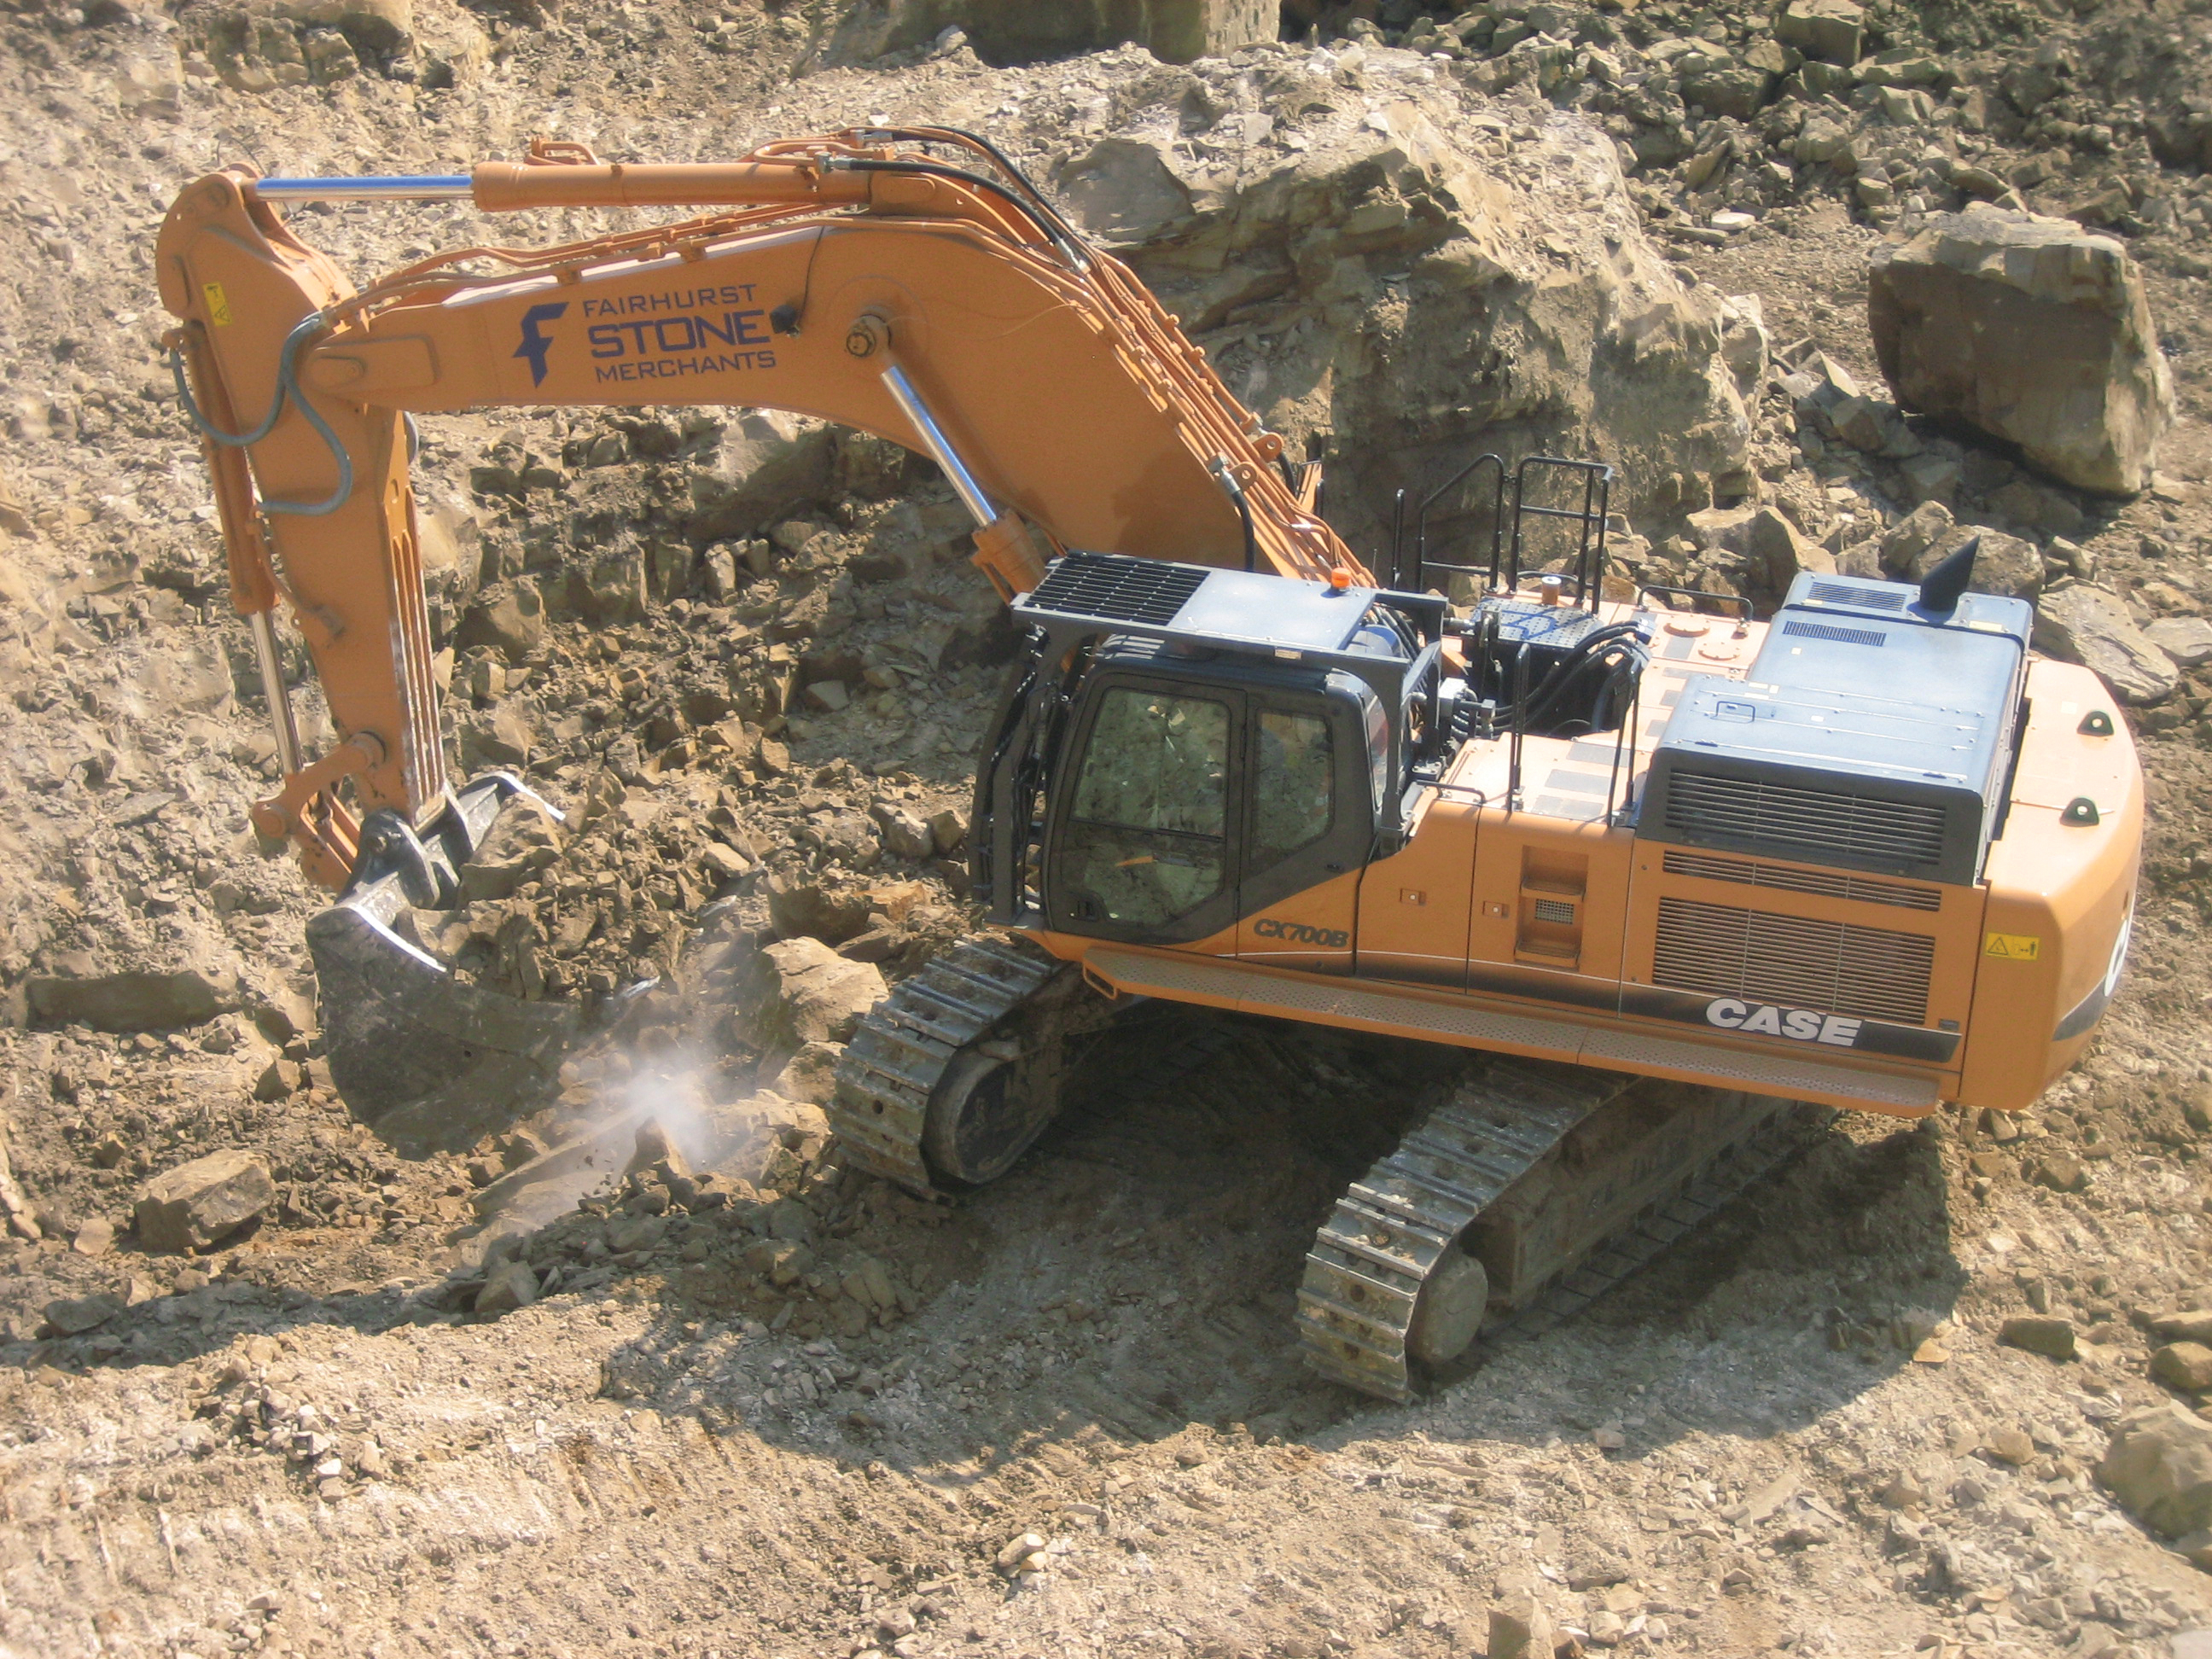 Case CX700B mass excavation unit